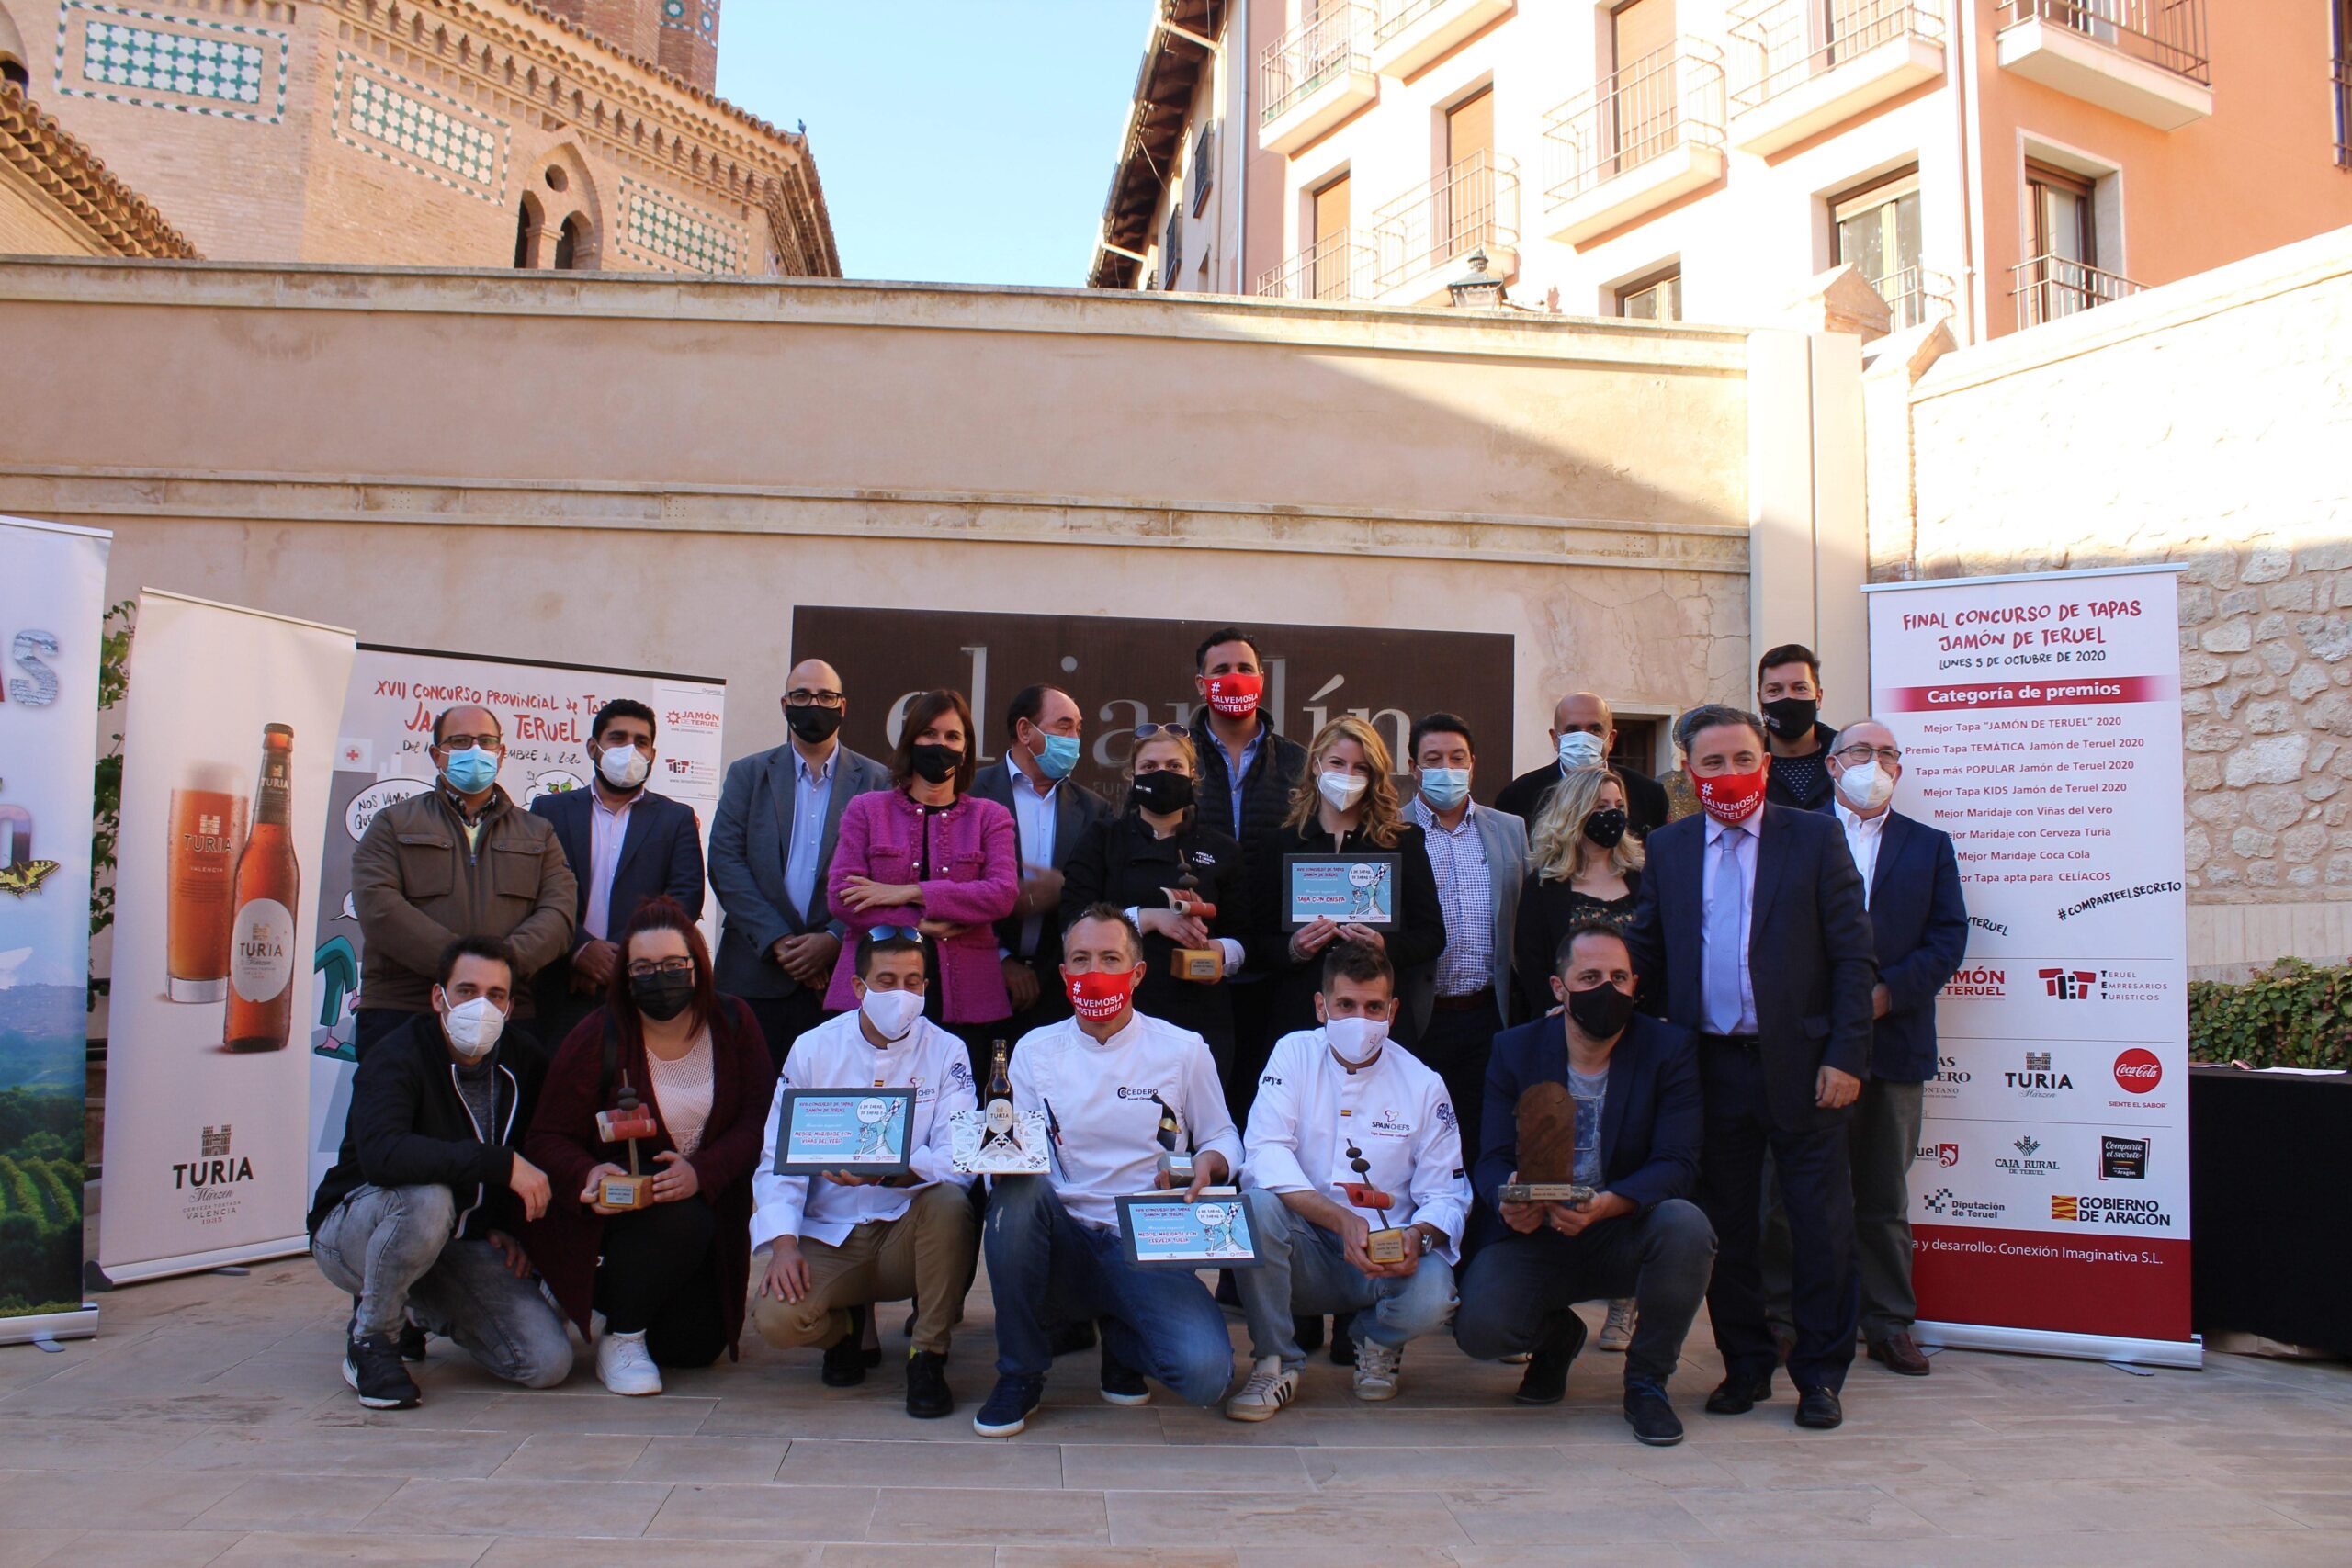 Ganadores concurso de tapas jamón de Teruel 2020